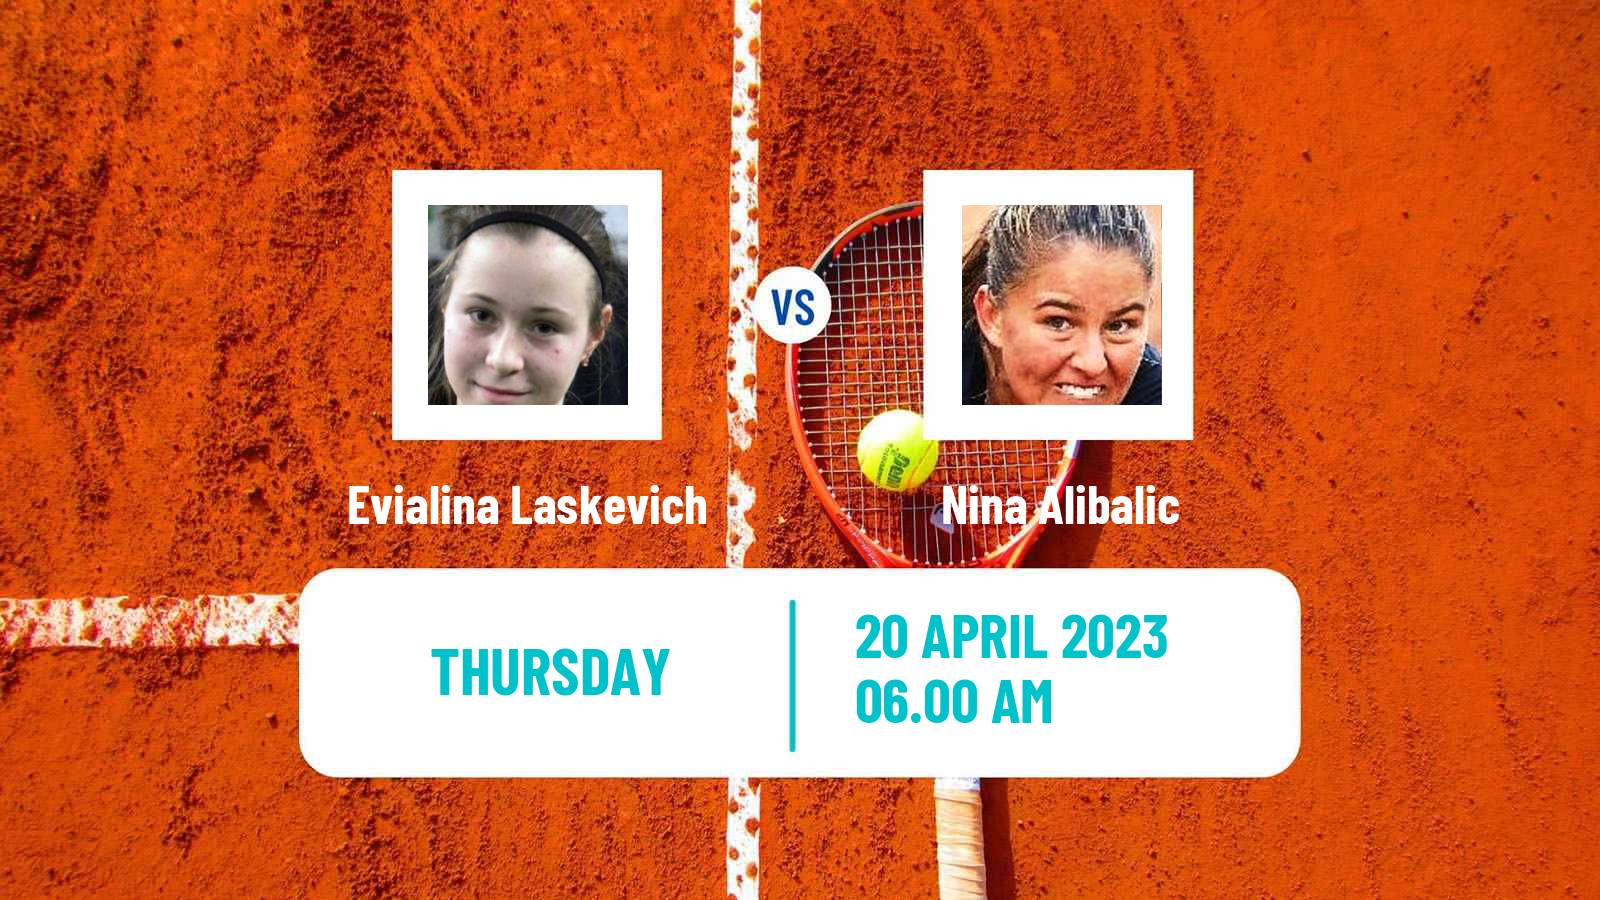 Tennis ITF Tournaments Evialina Laskevich - Nina Alibalic